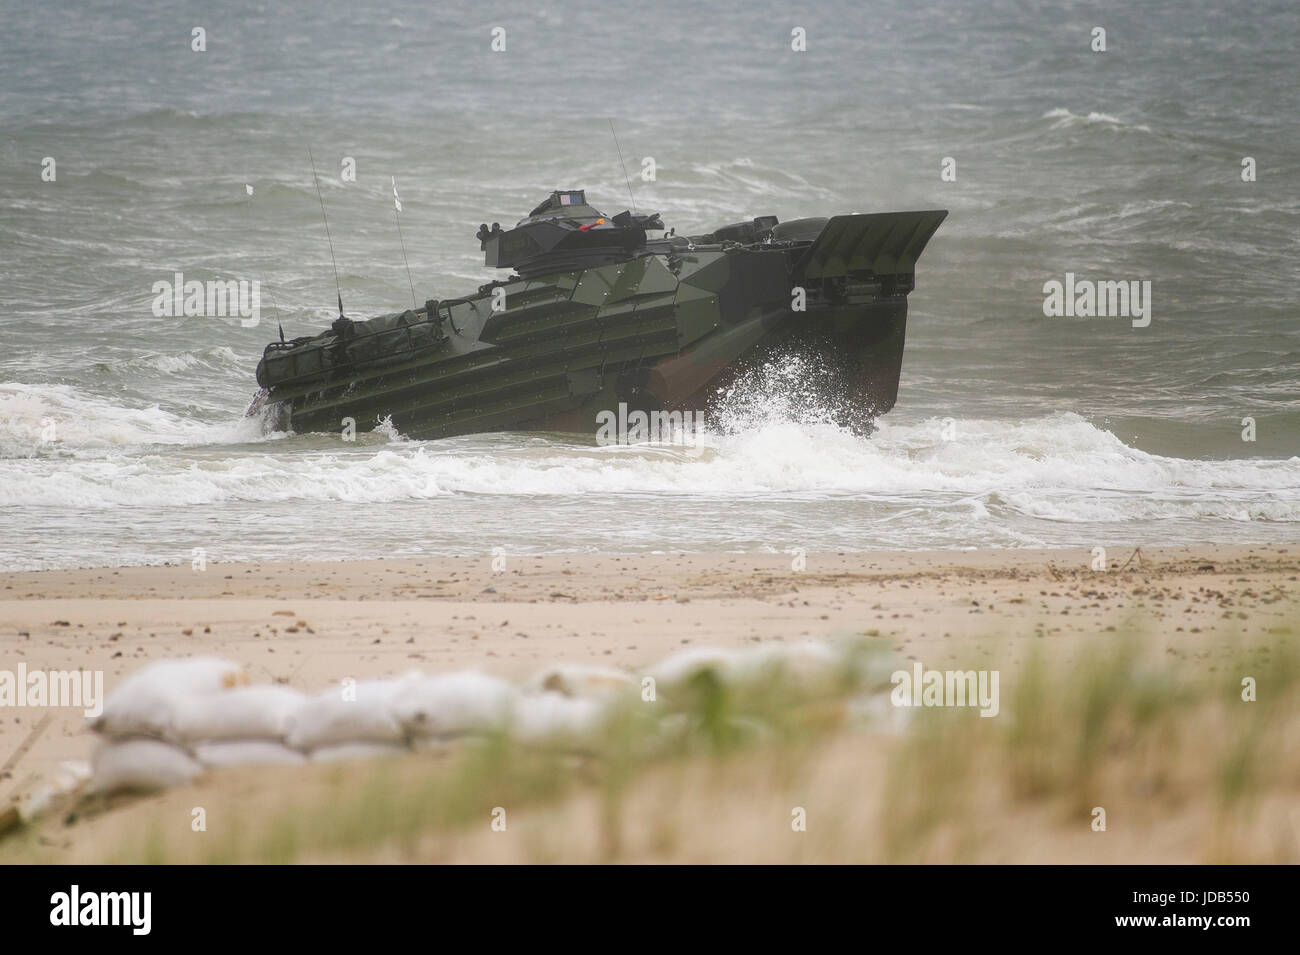 Un assaut américain véhicule amphibie AAV-7 est l'atterrissage sur la plage pendant la 45e édition de l'exercice BALTOPS 2017 Opérations de la Baltique à Ustka, Pol Banque D'Images